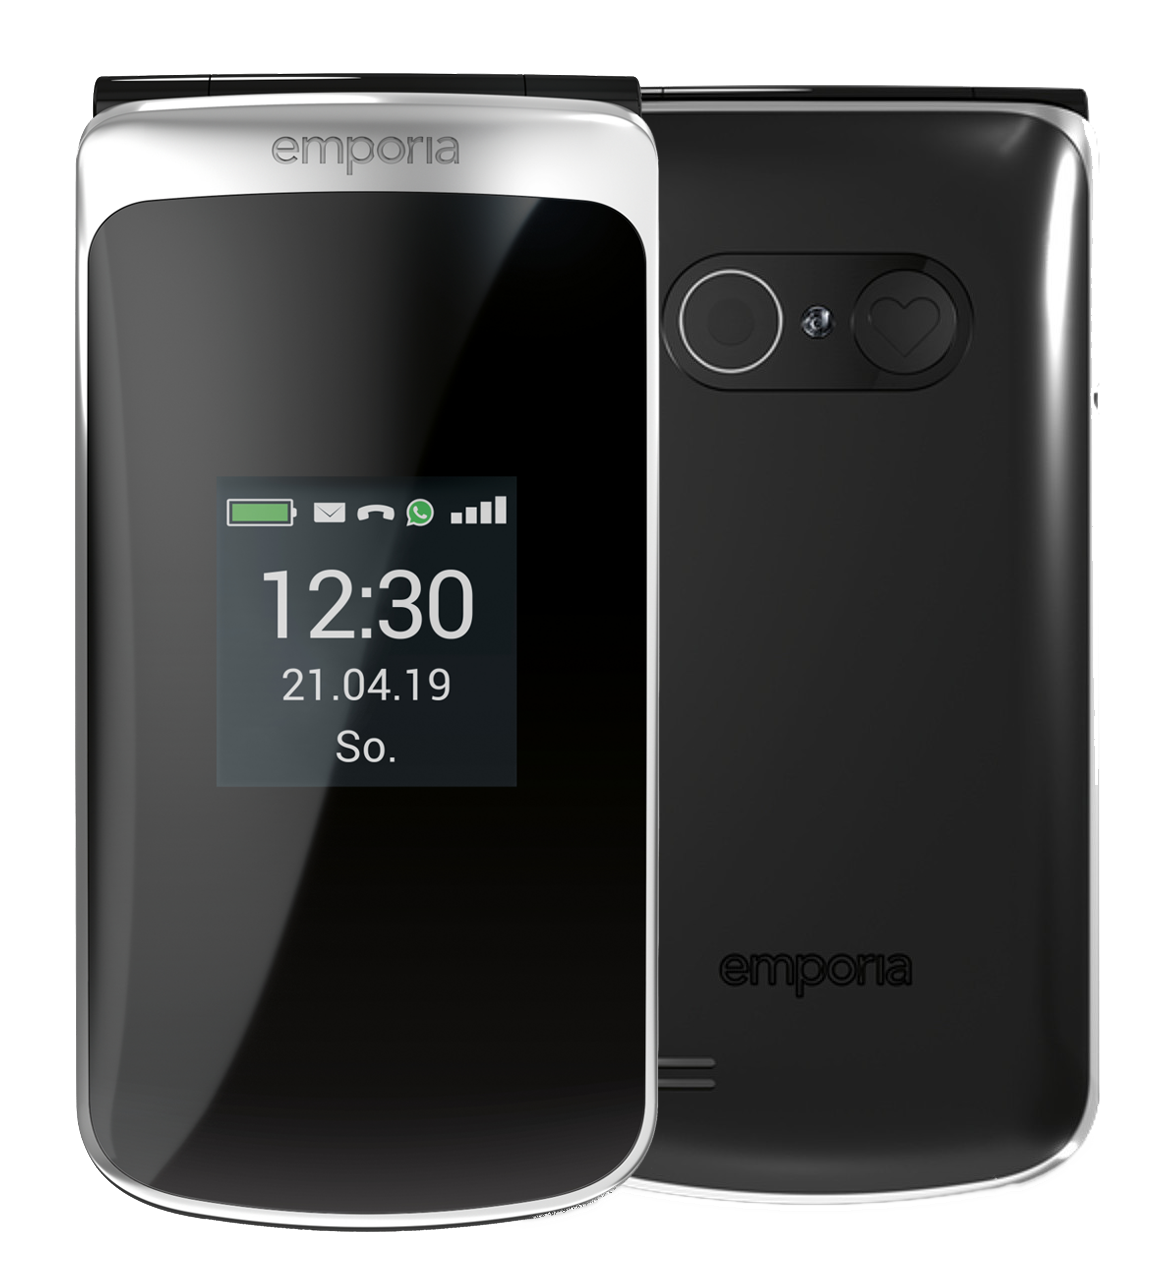 Emporia TouchSmart schwarz schwarz - Ohne Vertrag